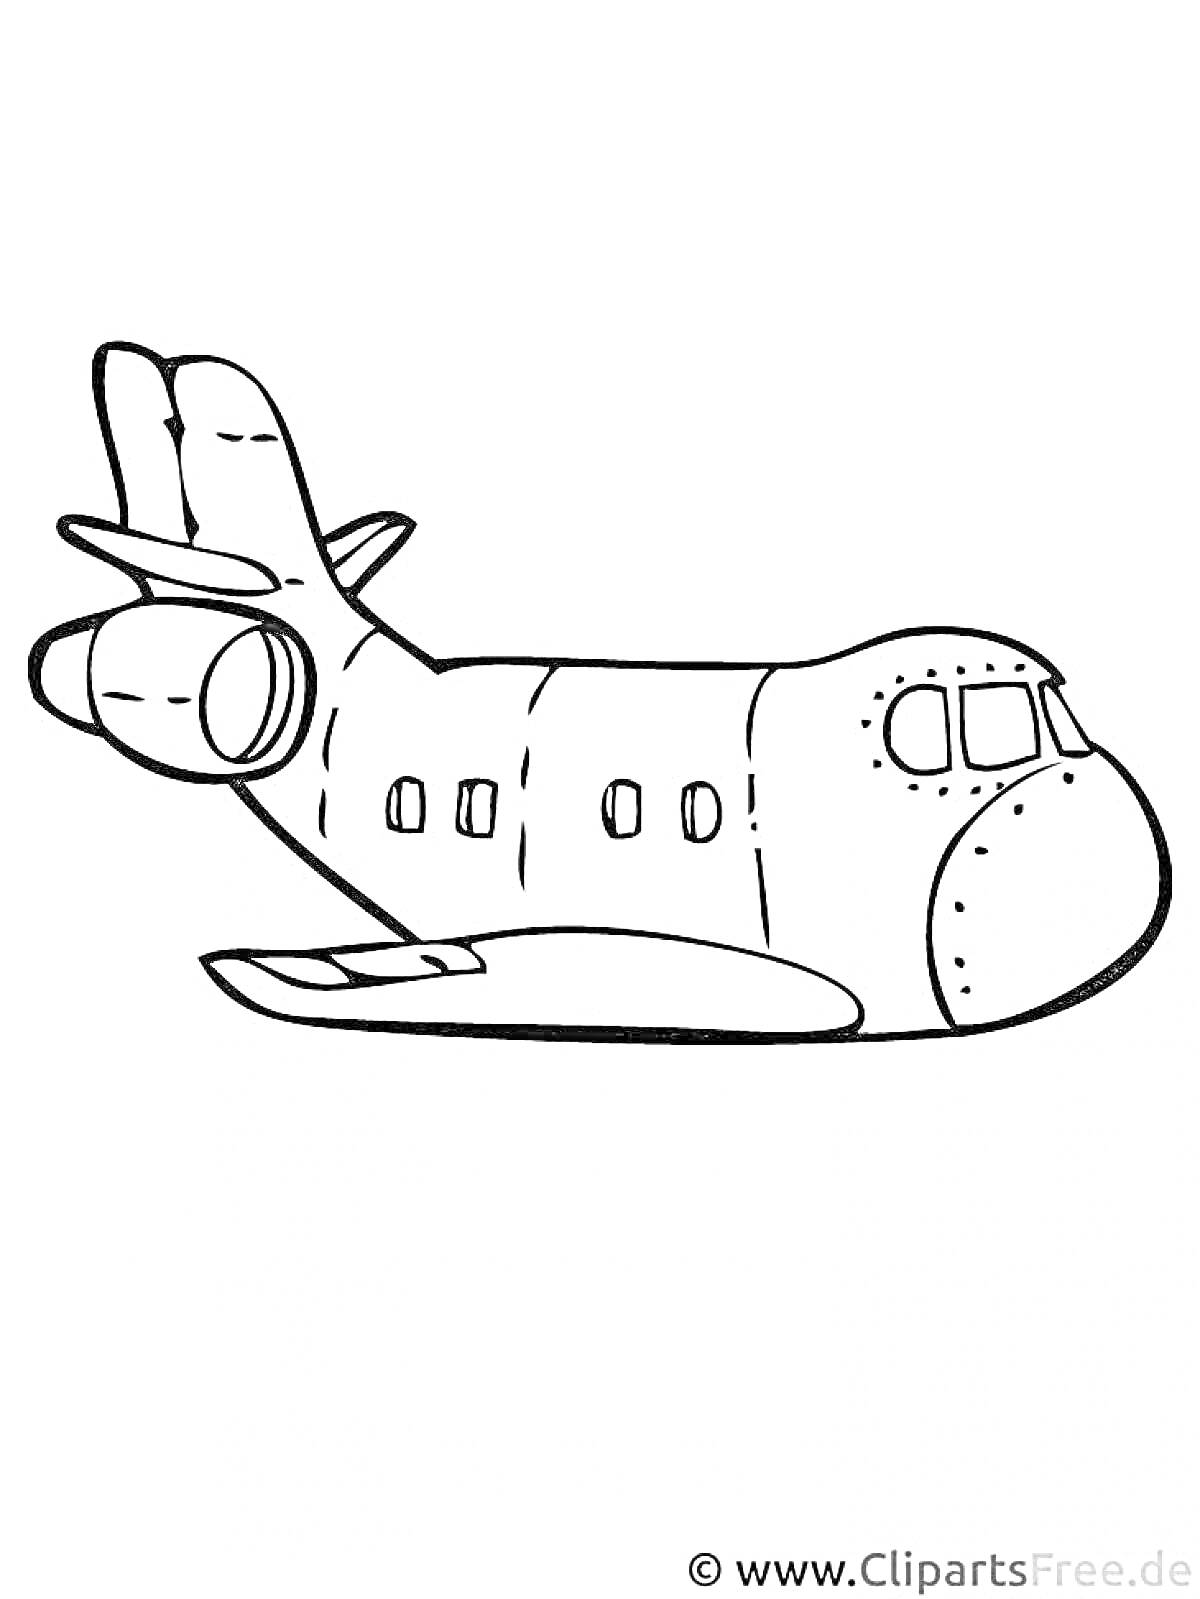 Раскраска Самолет с иллюминаторами